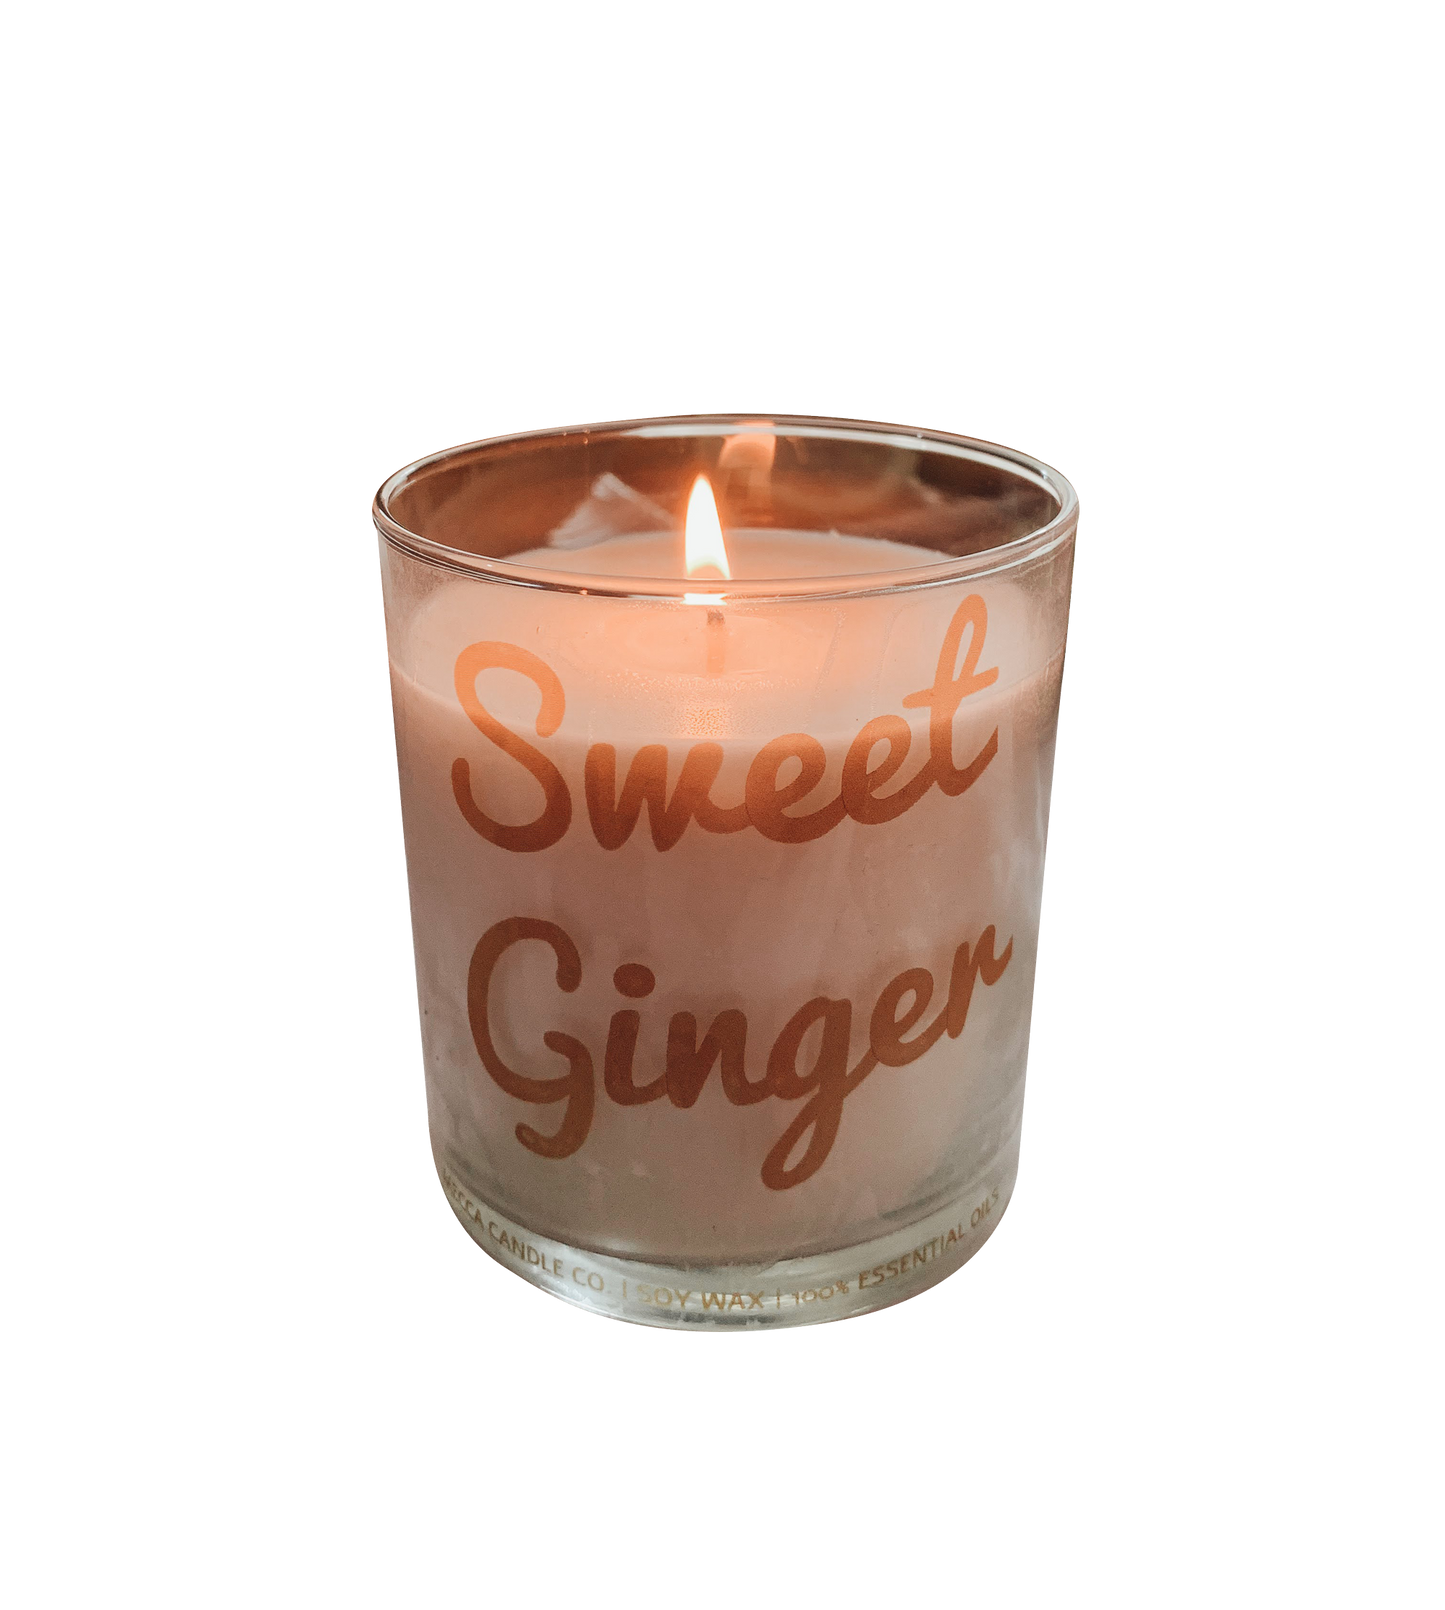 Sweet Ginger